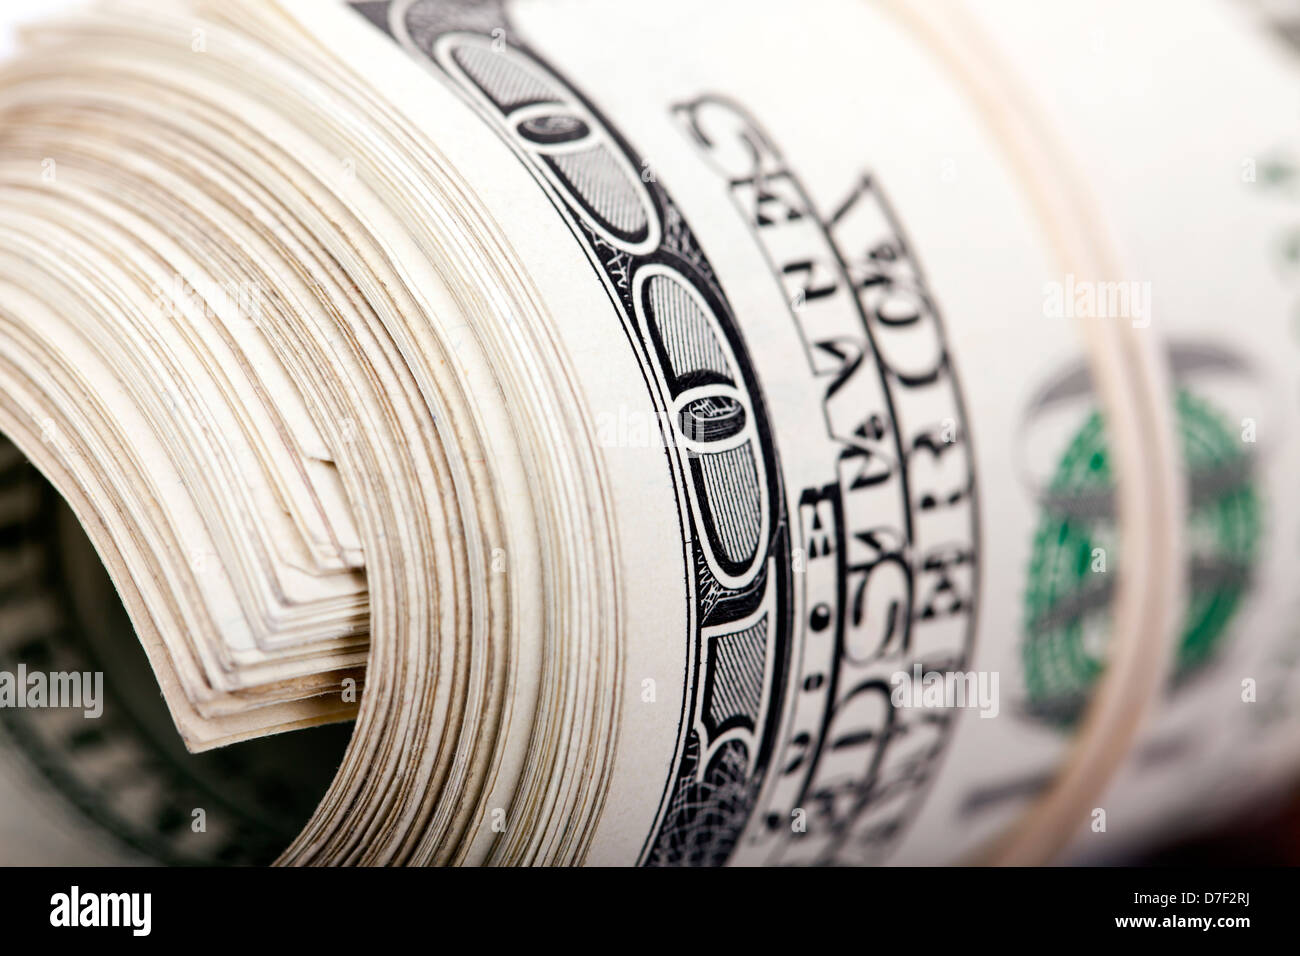 Eine extreme Nahaufnahme einer Reihe von 100 US-Dollar Geld Notizen aufgerollt und mit einem einfachen Gummiband zusammengehalten. Stockfoto